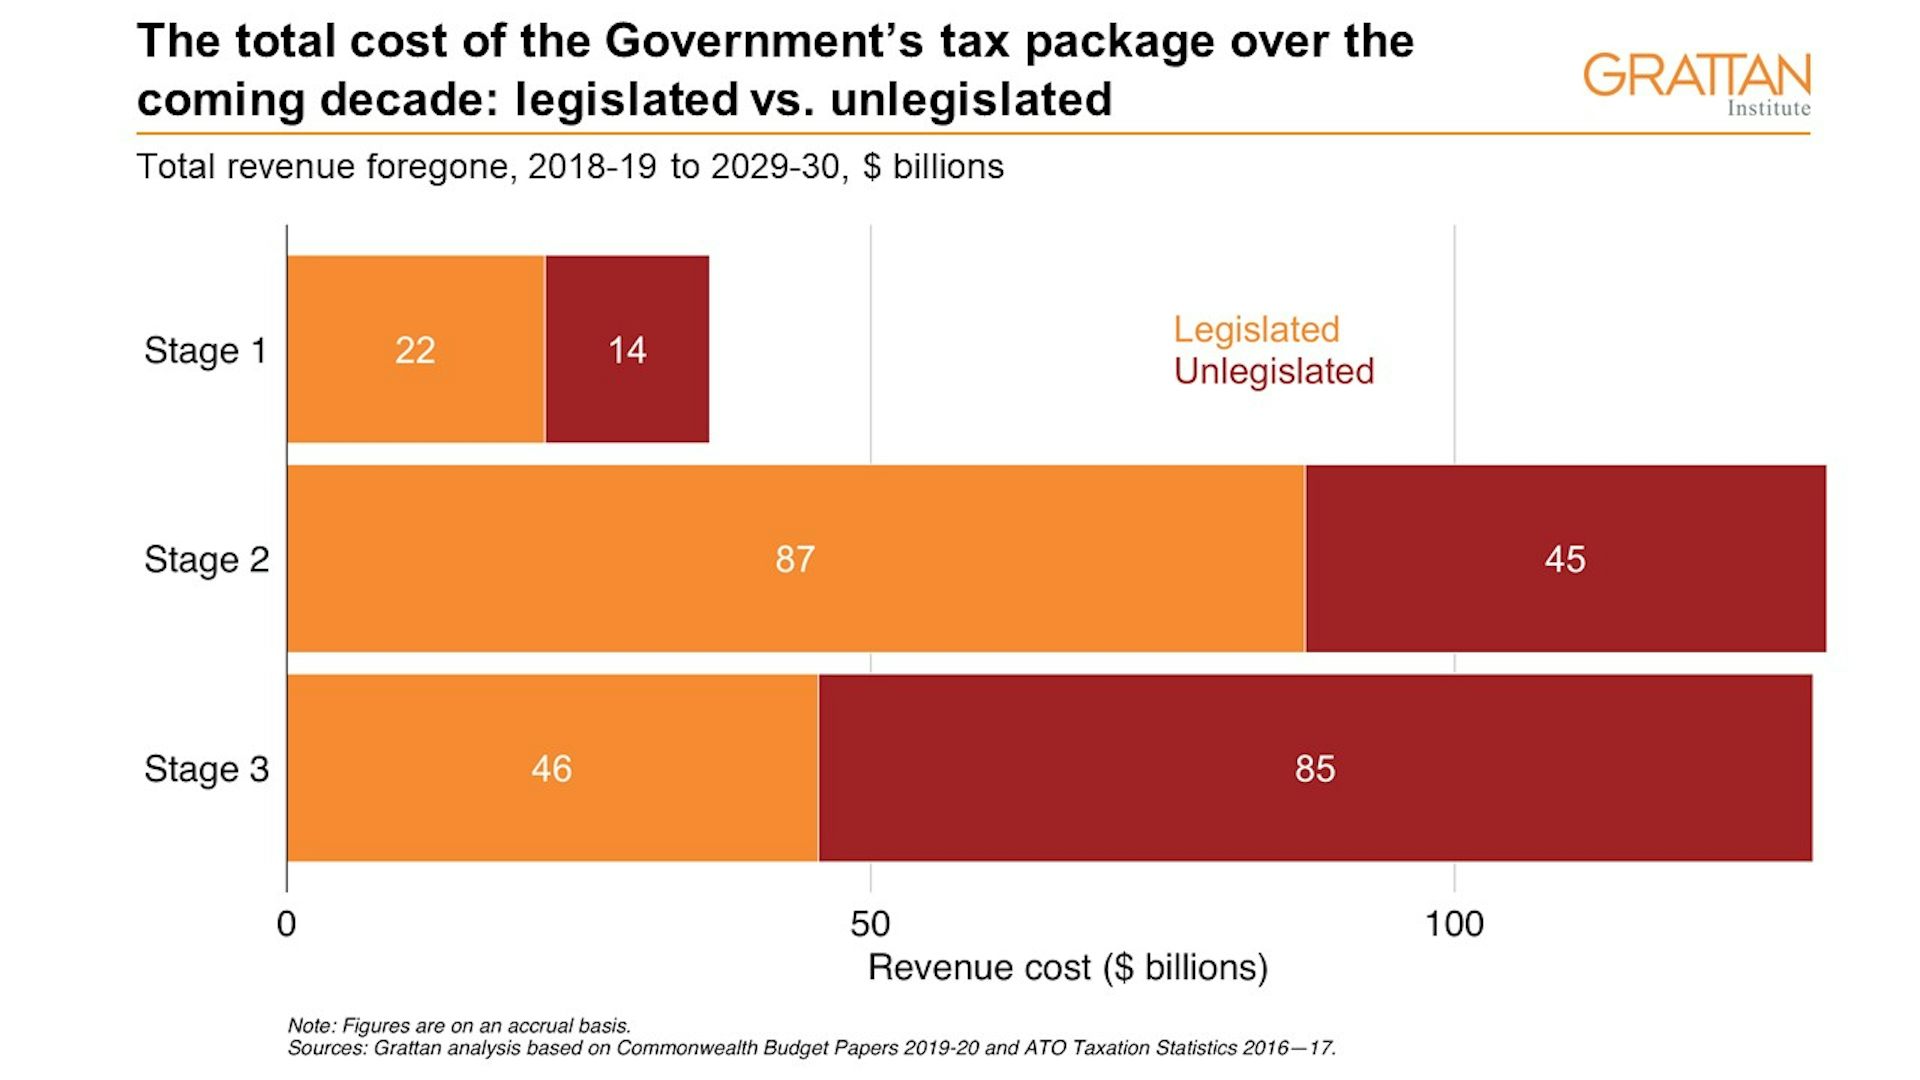 Stimulus Tax Refund Chart